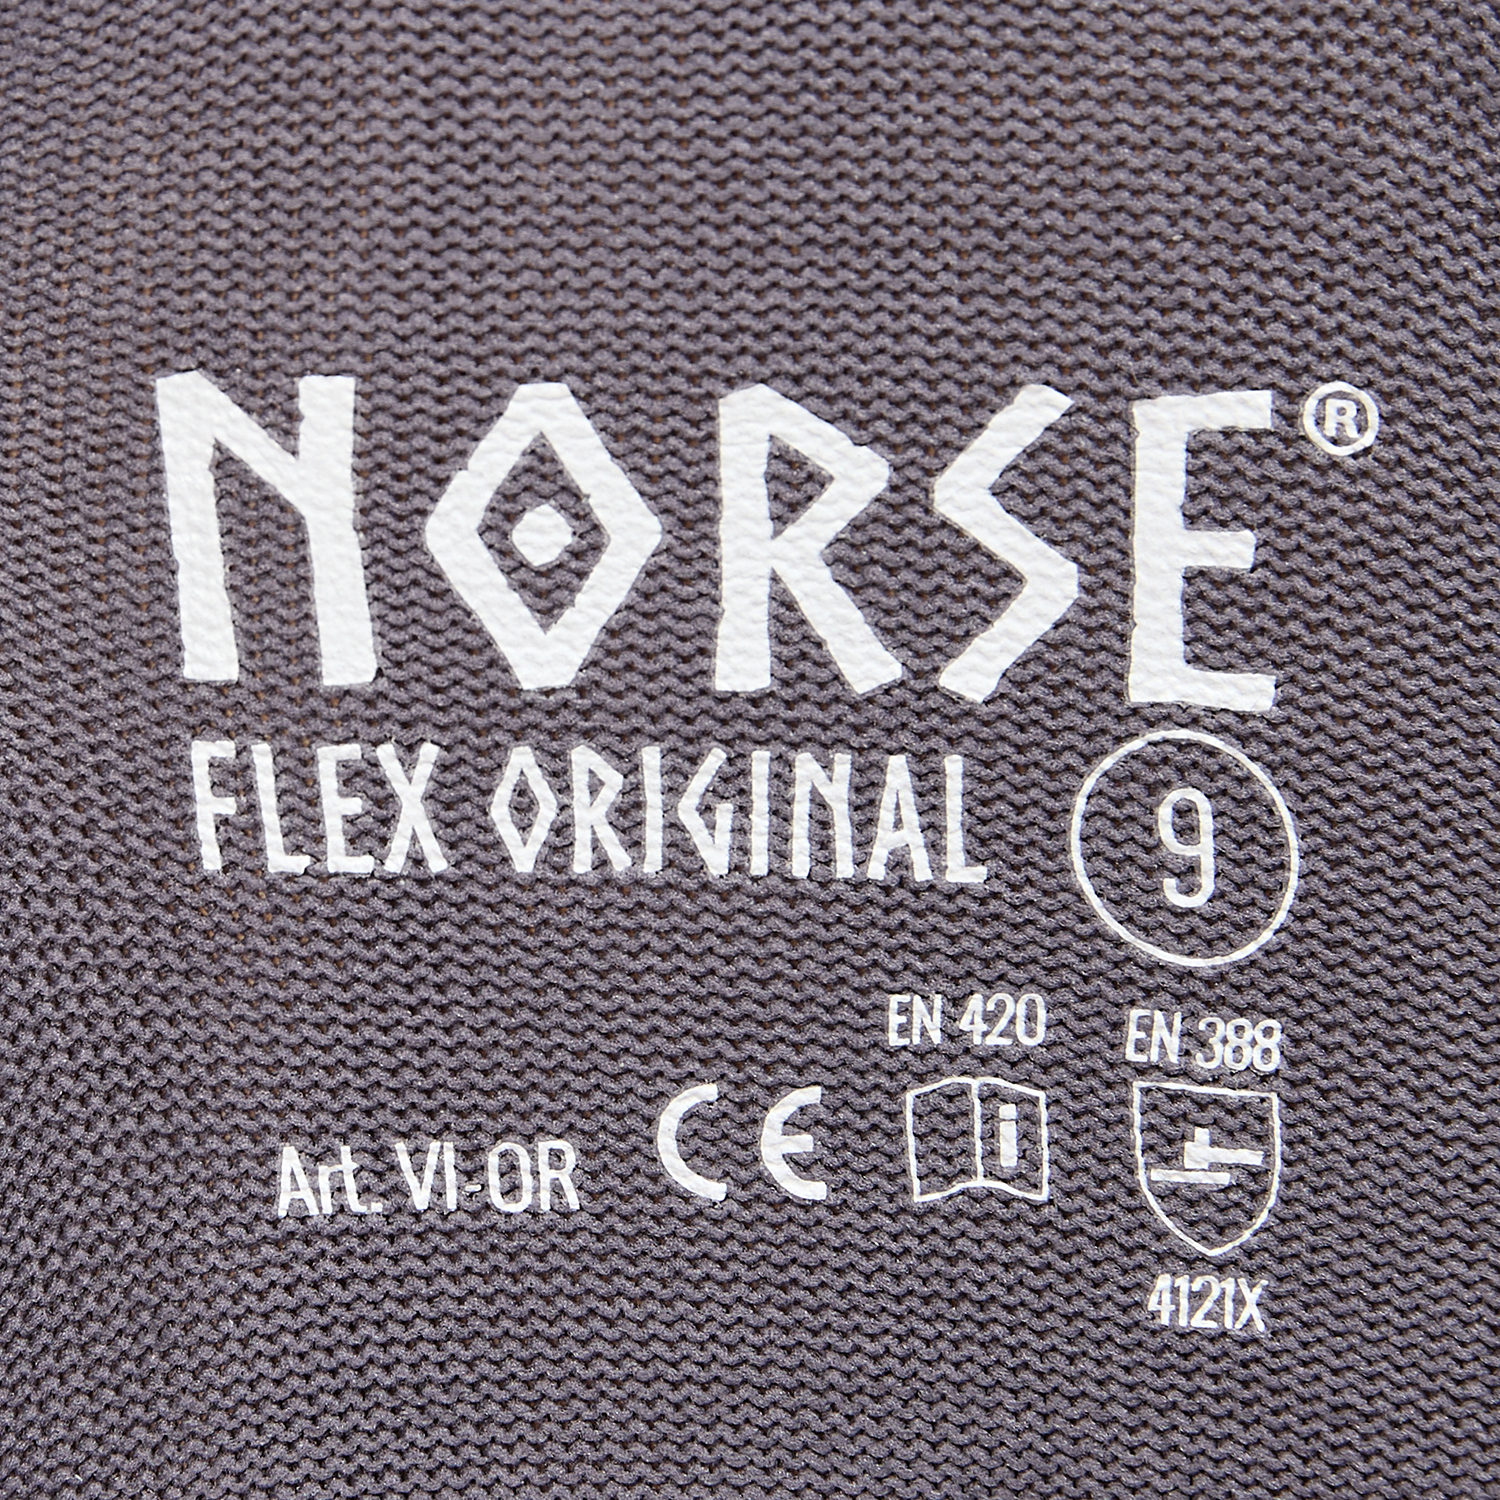 NORSE Flex Original montagehandschoenen maat 8